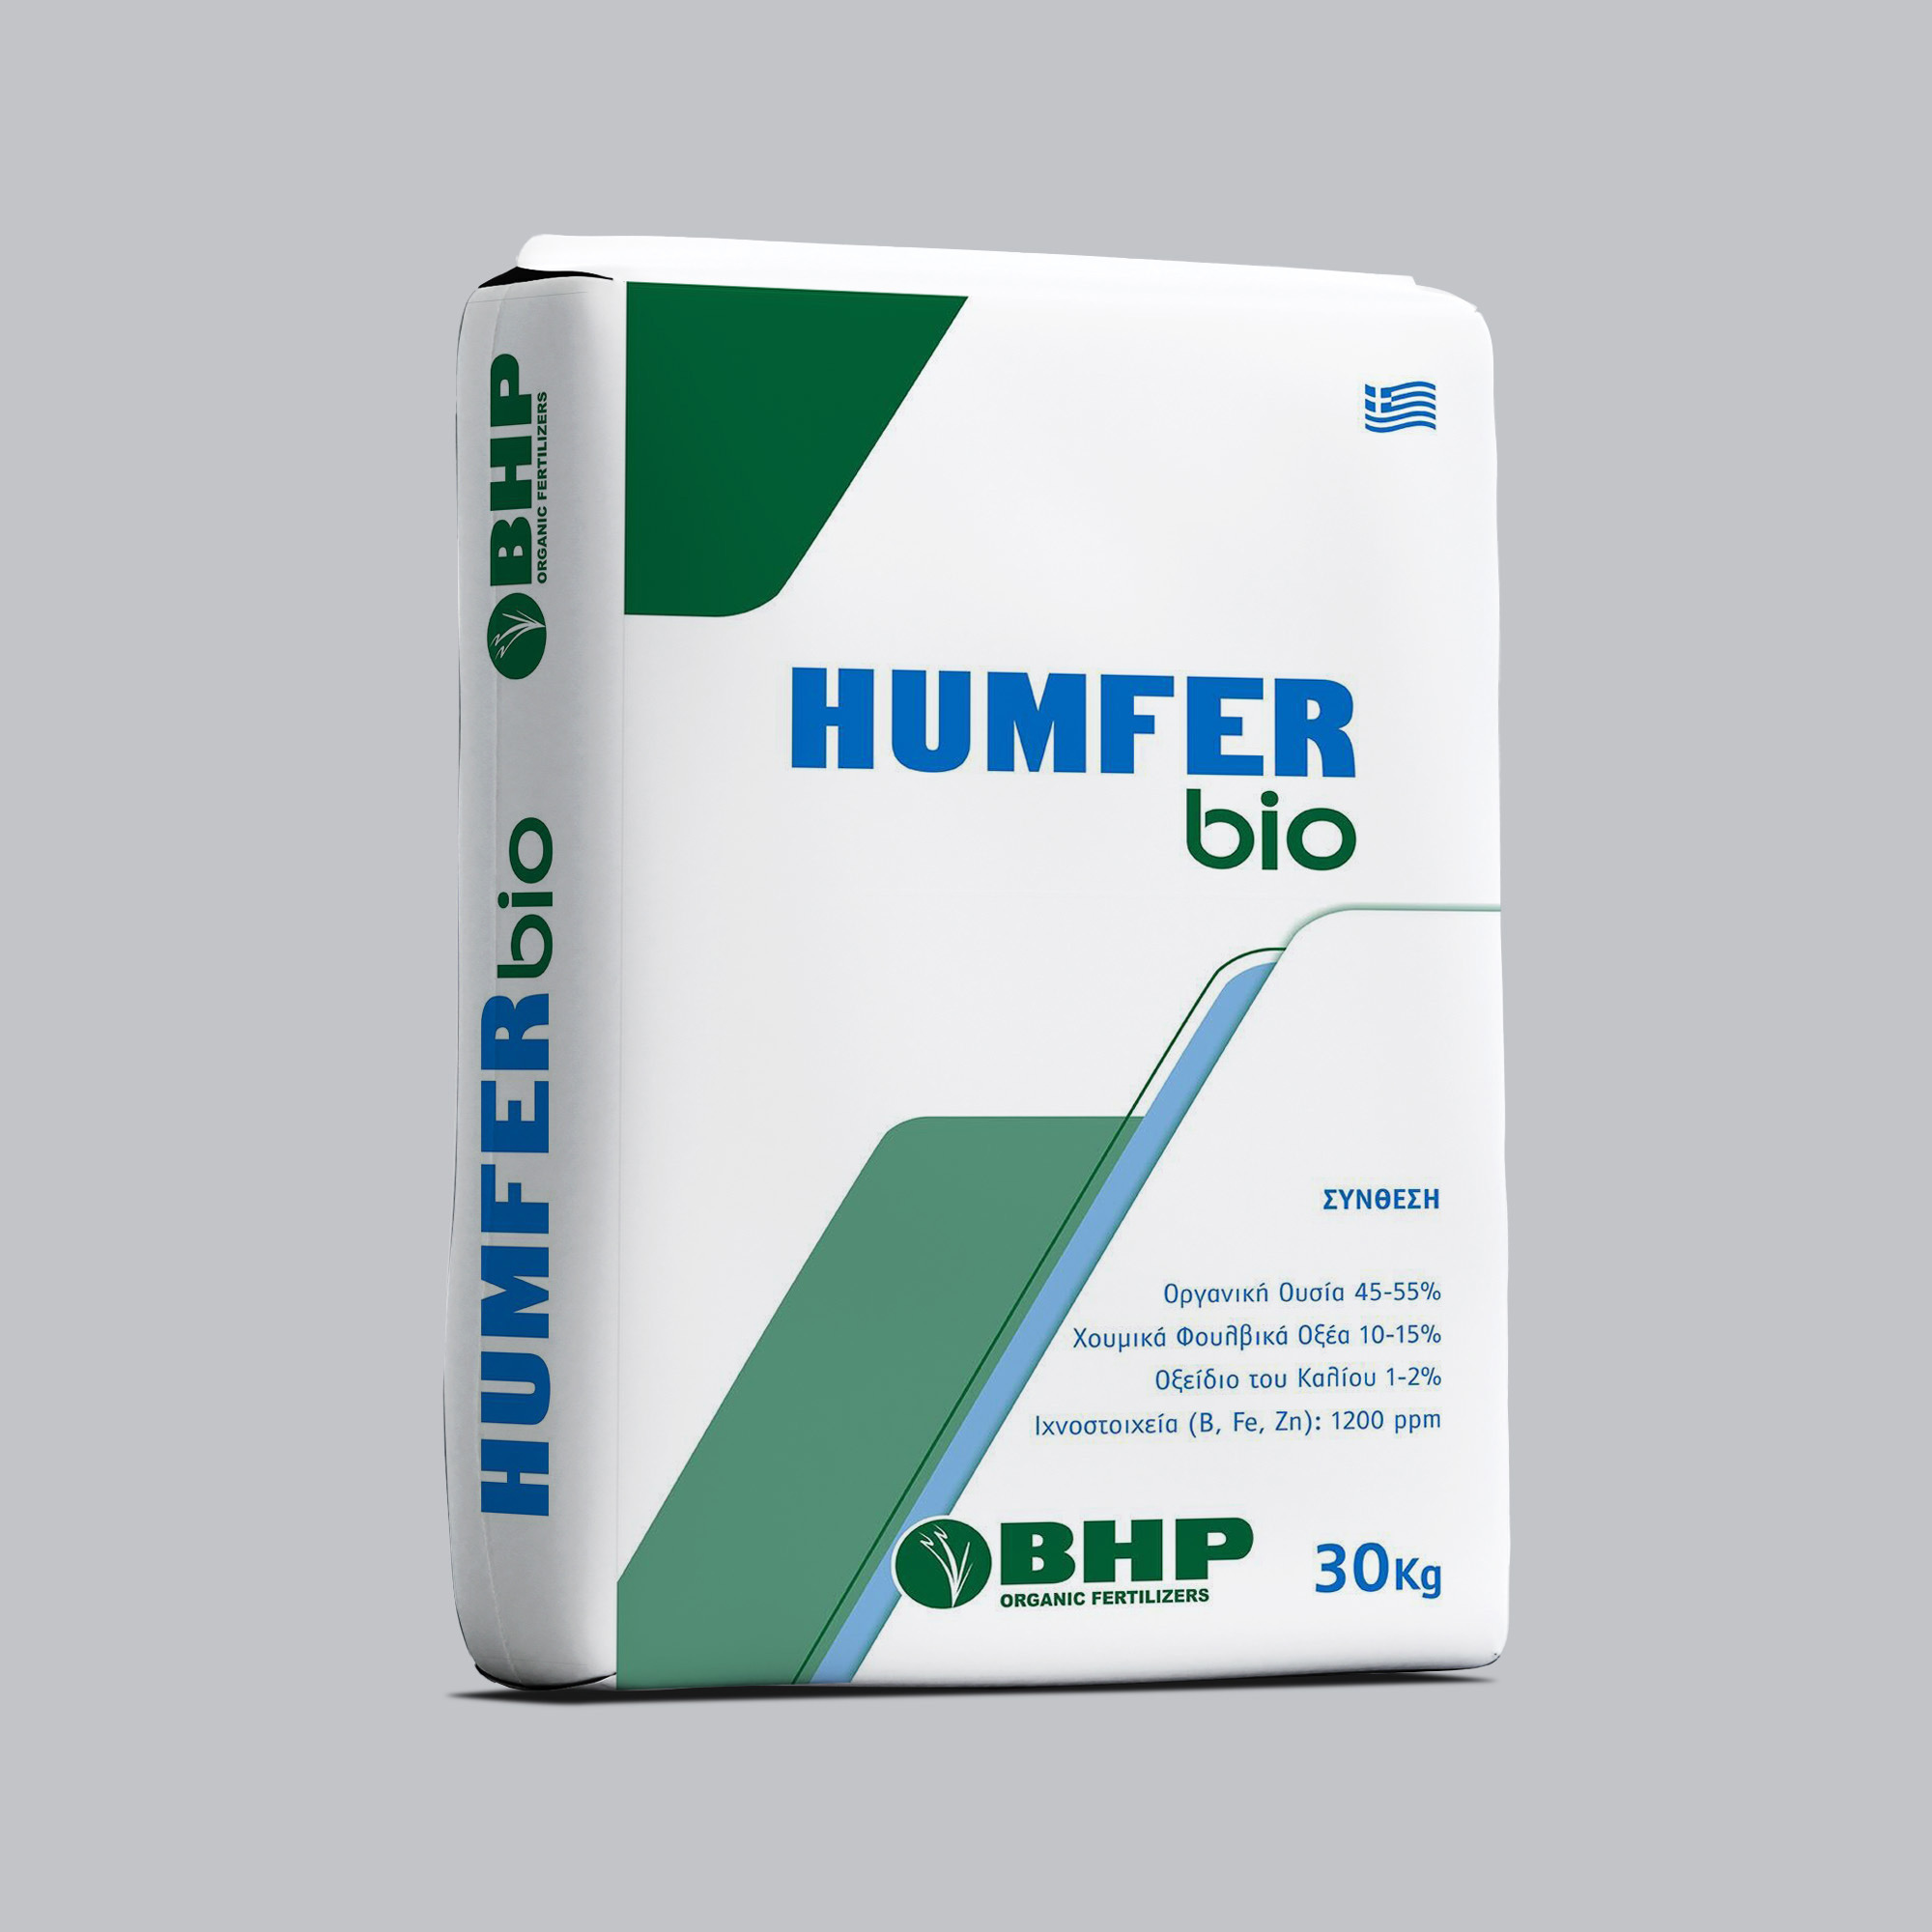 Humfer Bio